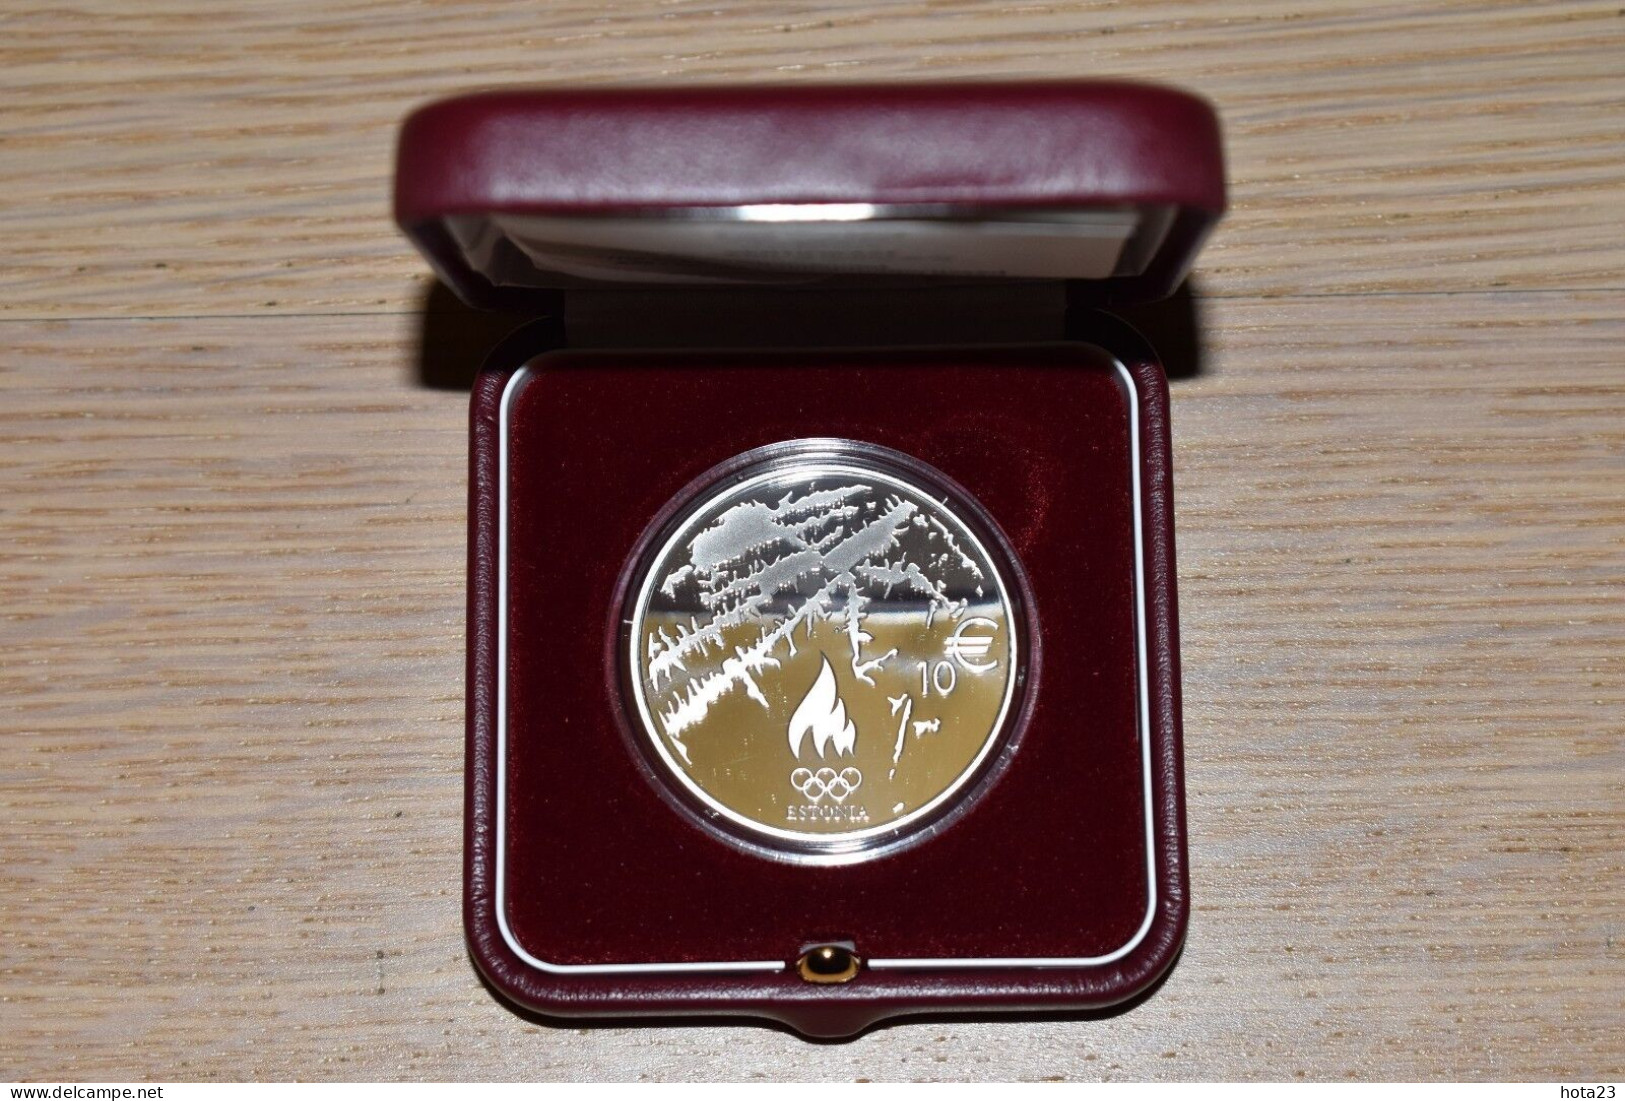 Estonia Silver Coin 10 Euro 2014 XXII Olympic Games In Sochi Russia  PROOF - Estonia